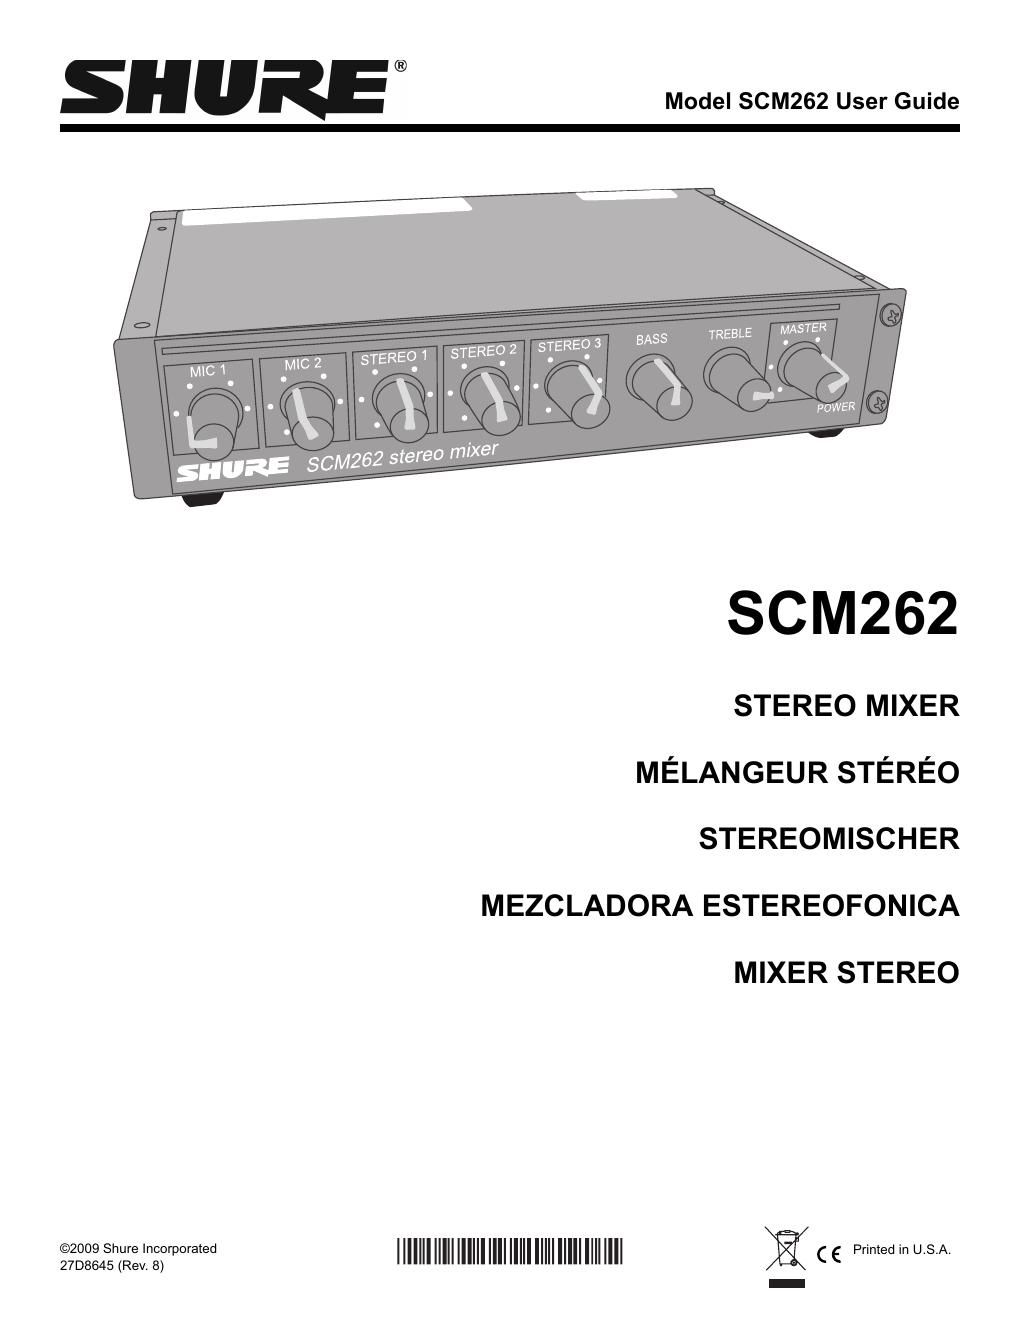 shure scm 262 user manual